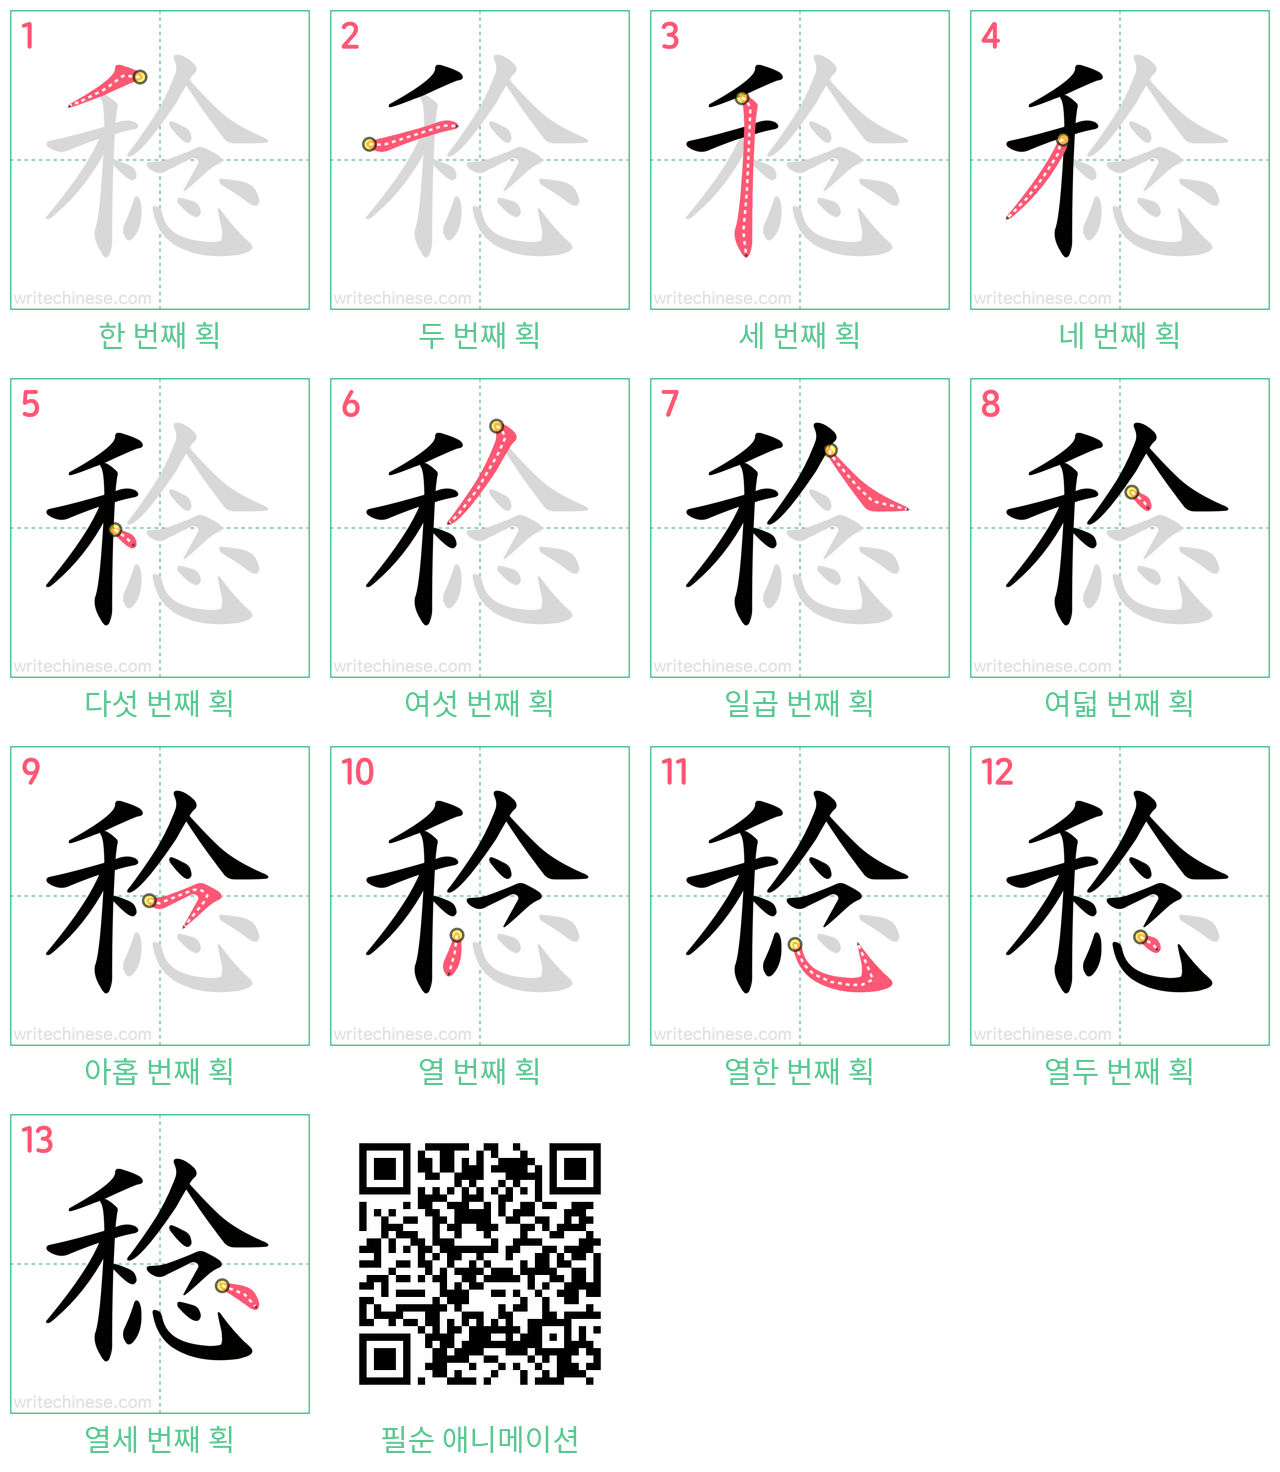 稔 step-by-step stroke order diagrams